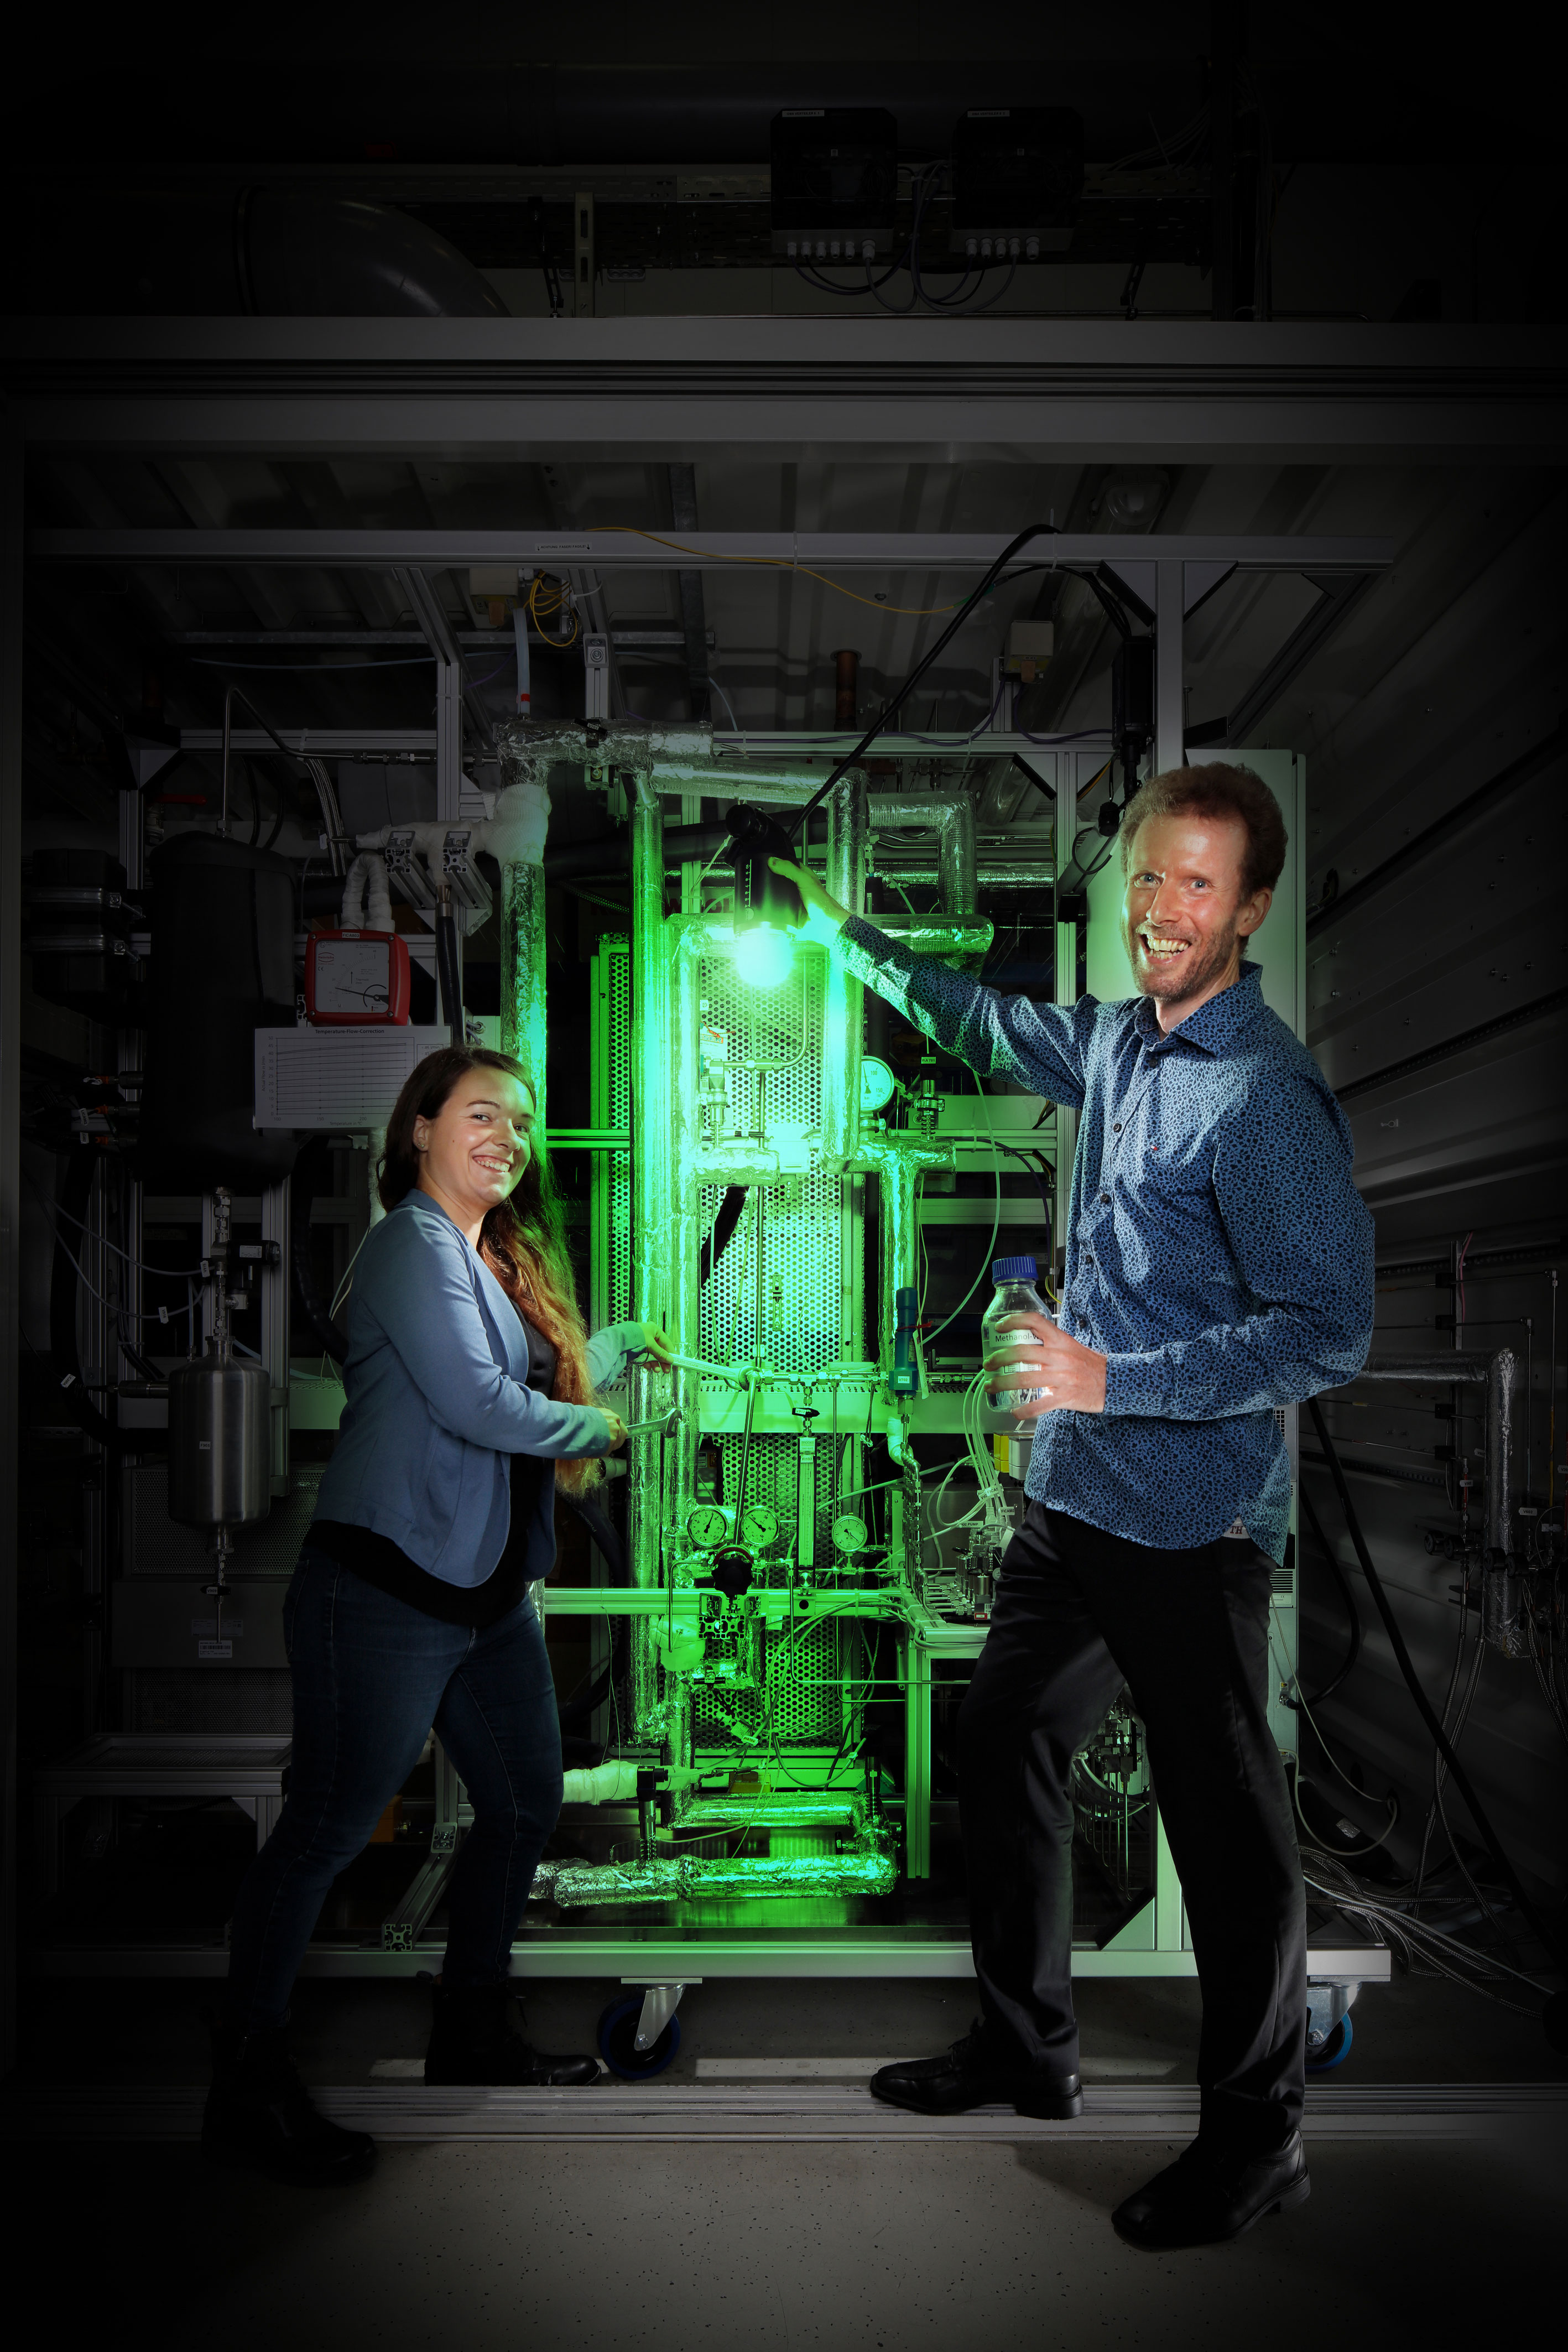 Katharina Pautsch und Dr. Achim Schaadt vom Fraunhofer ISE konstruieren unter anderem die Umwandlung erneu-sogenannte Miniplants für die Umwandlung erneuerbarer Energie in flüssige Kraftstoffe und Chemikalien wie Methanol oder Oxymethylenether.